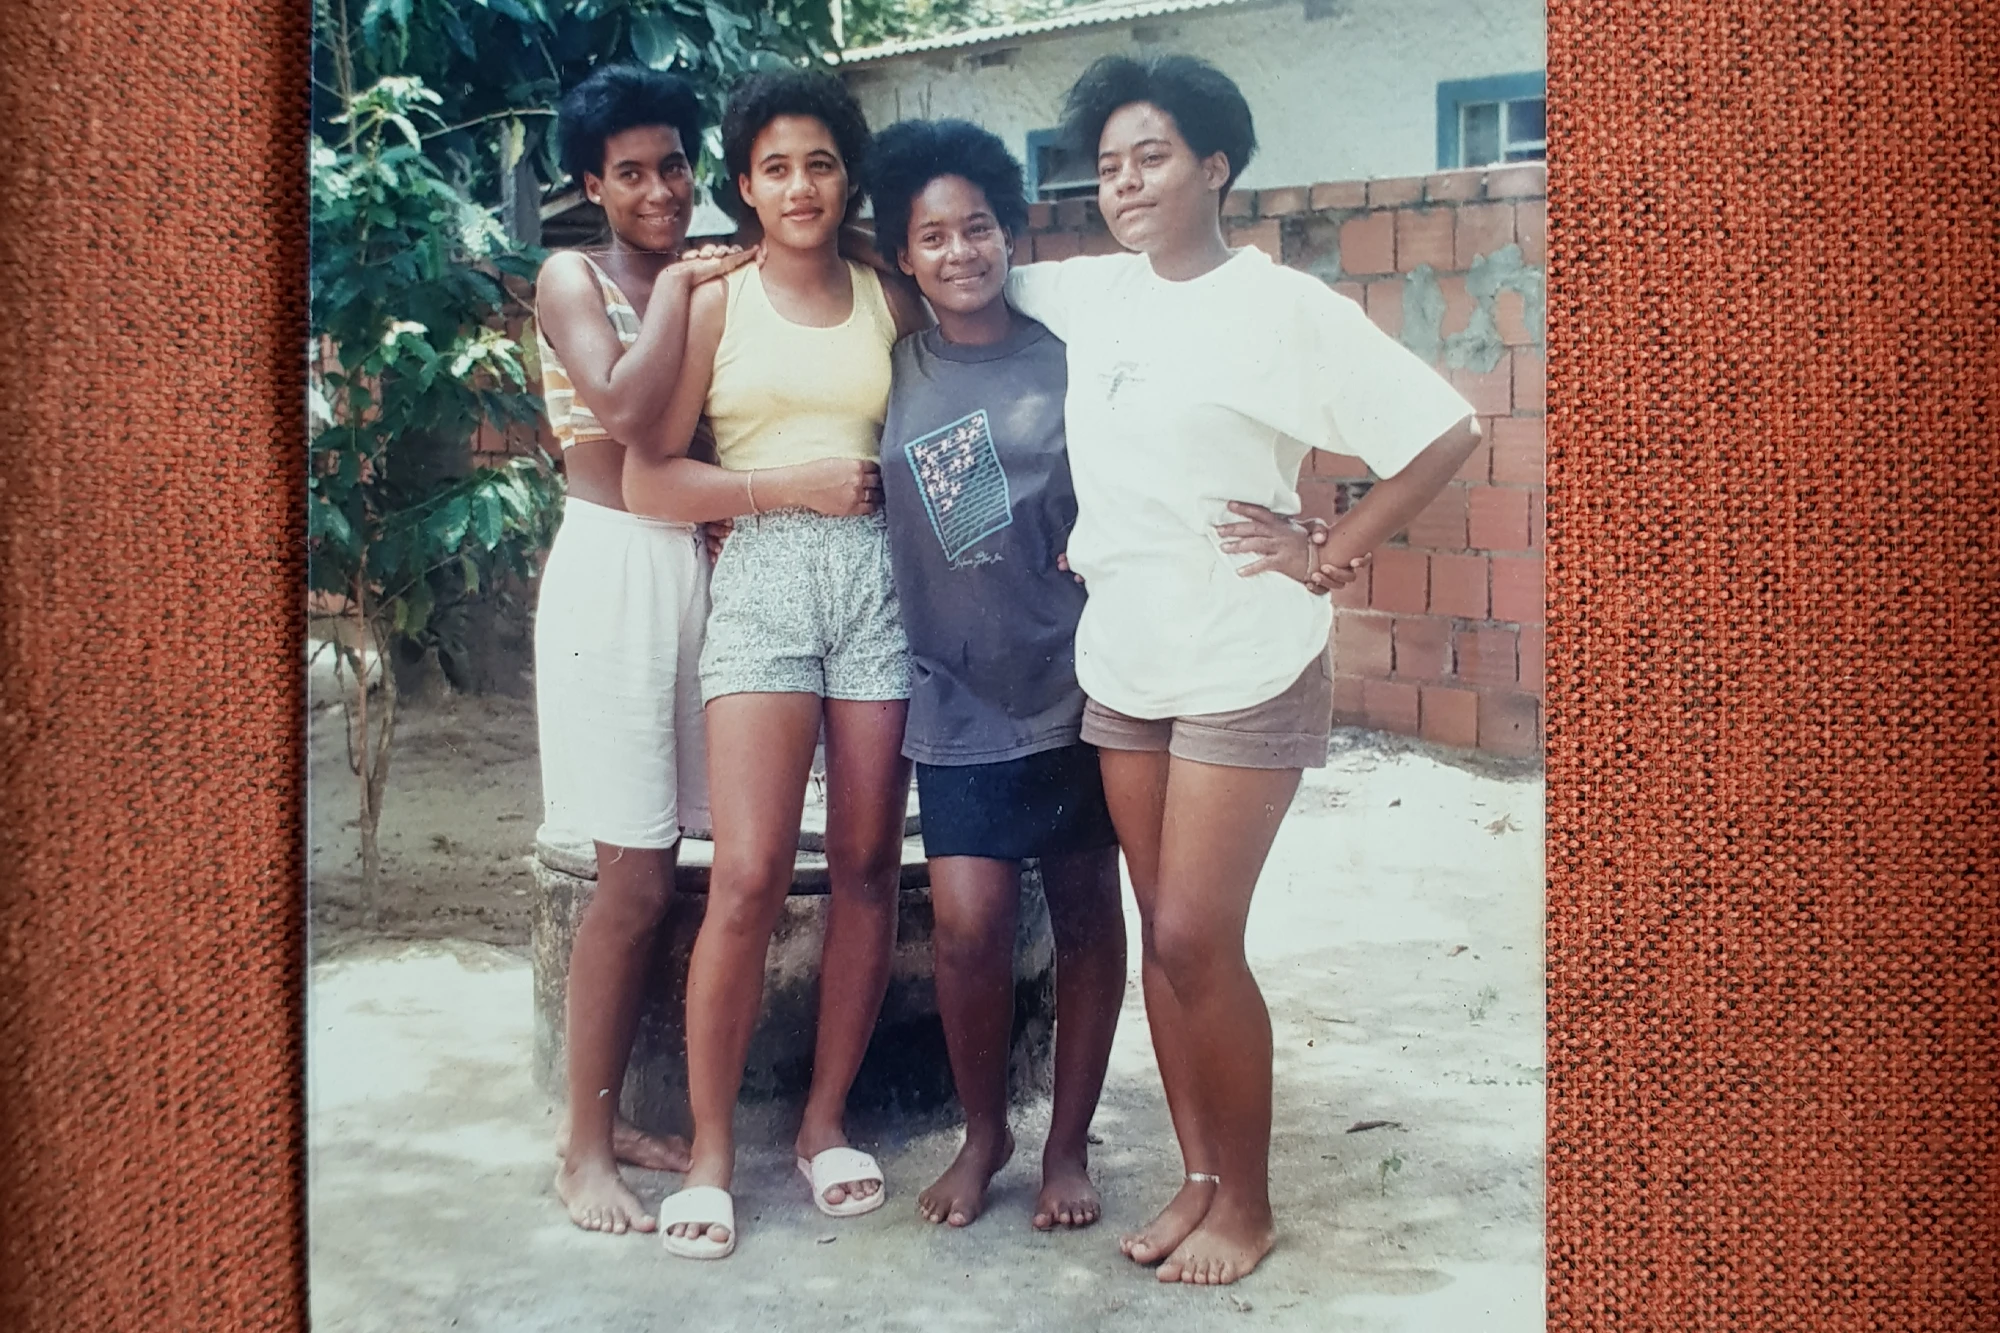 Em foto de 1991, Adriana (de blusa branca) e suas irmãs Patrícia, Mônica e Irene: sandália compartilhada.
— Foto: acervo pessoal.